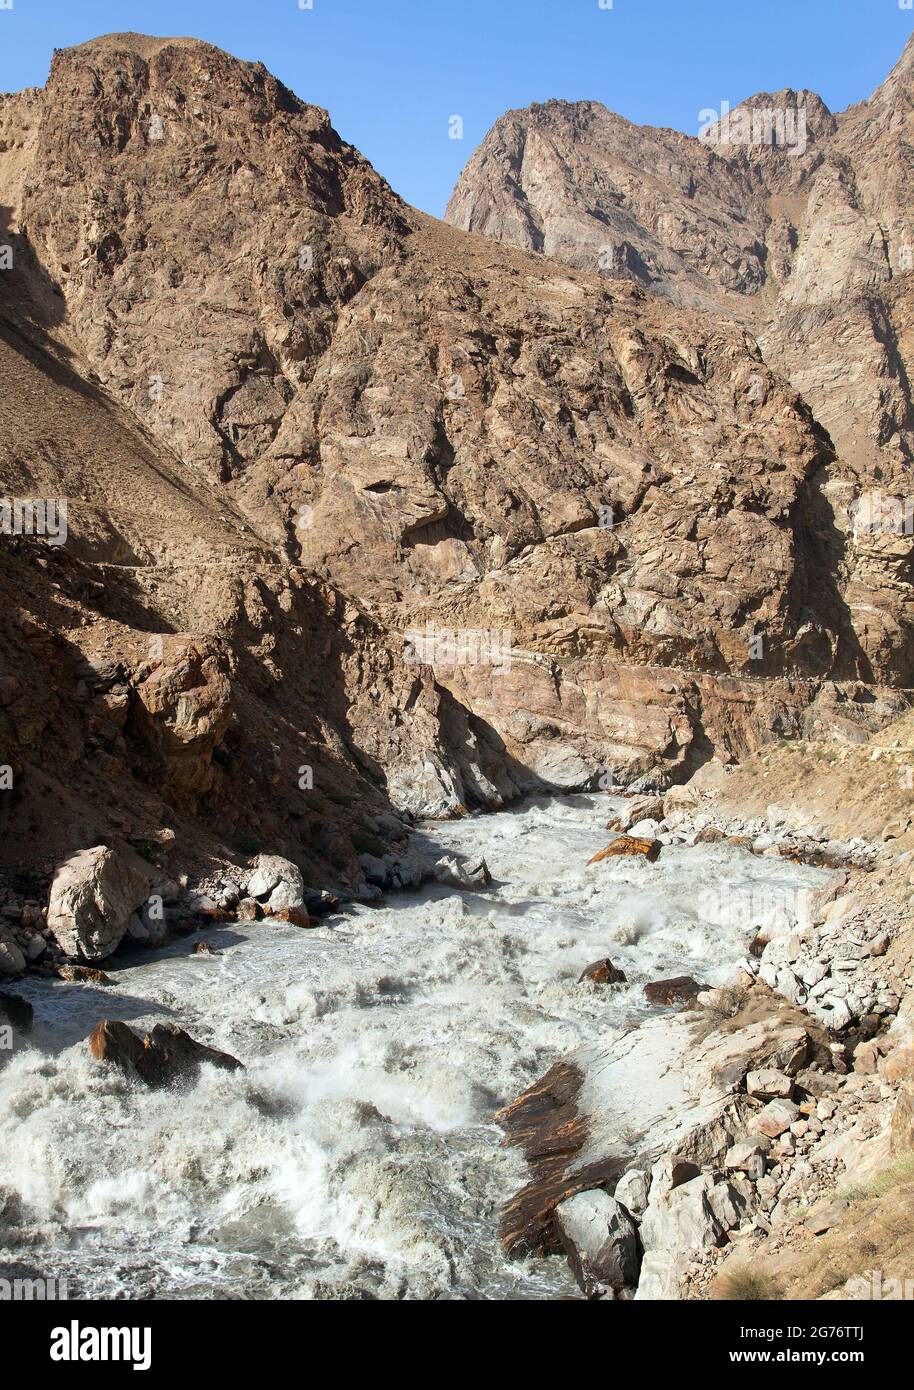 Rapide del fiume Panj e monti Pamir. Panj è la parte superiore del fiume Amu Darya. Vista panoramica. Tagikistan e confine con l'Afghanistan, Pamirskij Trakt Foto Stock